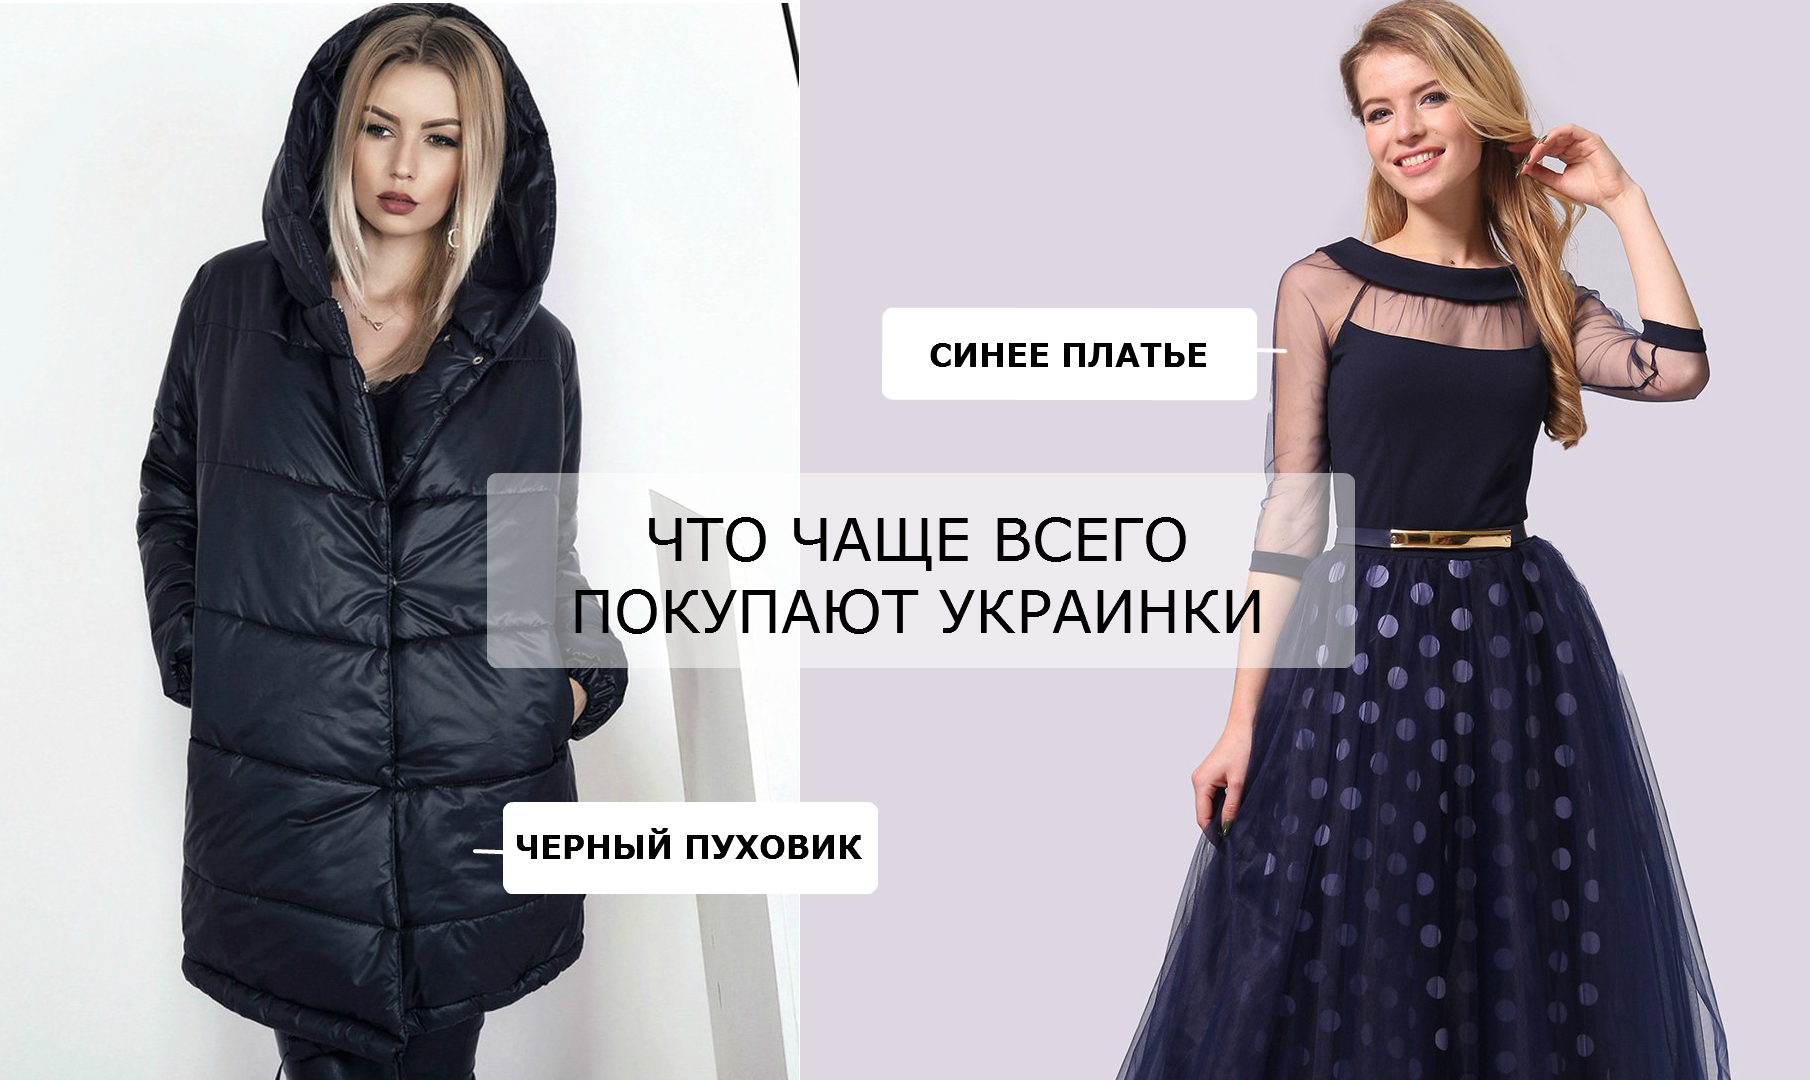 Шоппинг-портрет: какую одежду покупают украинки? Цвета и фасоны